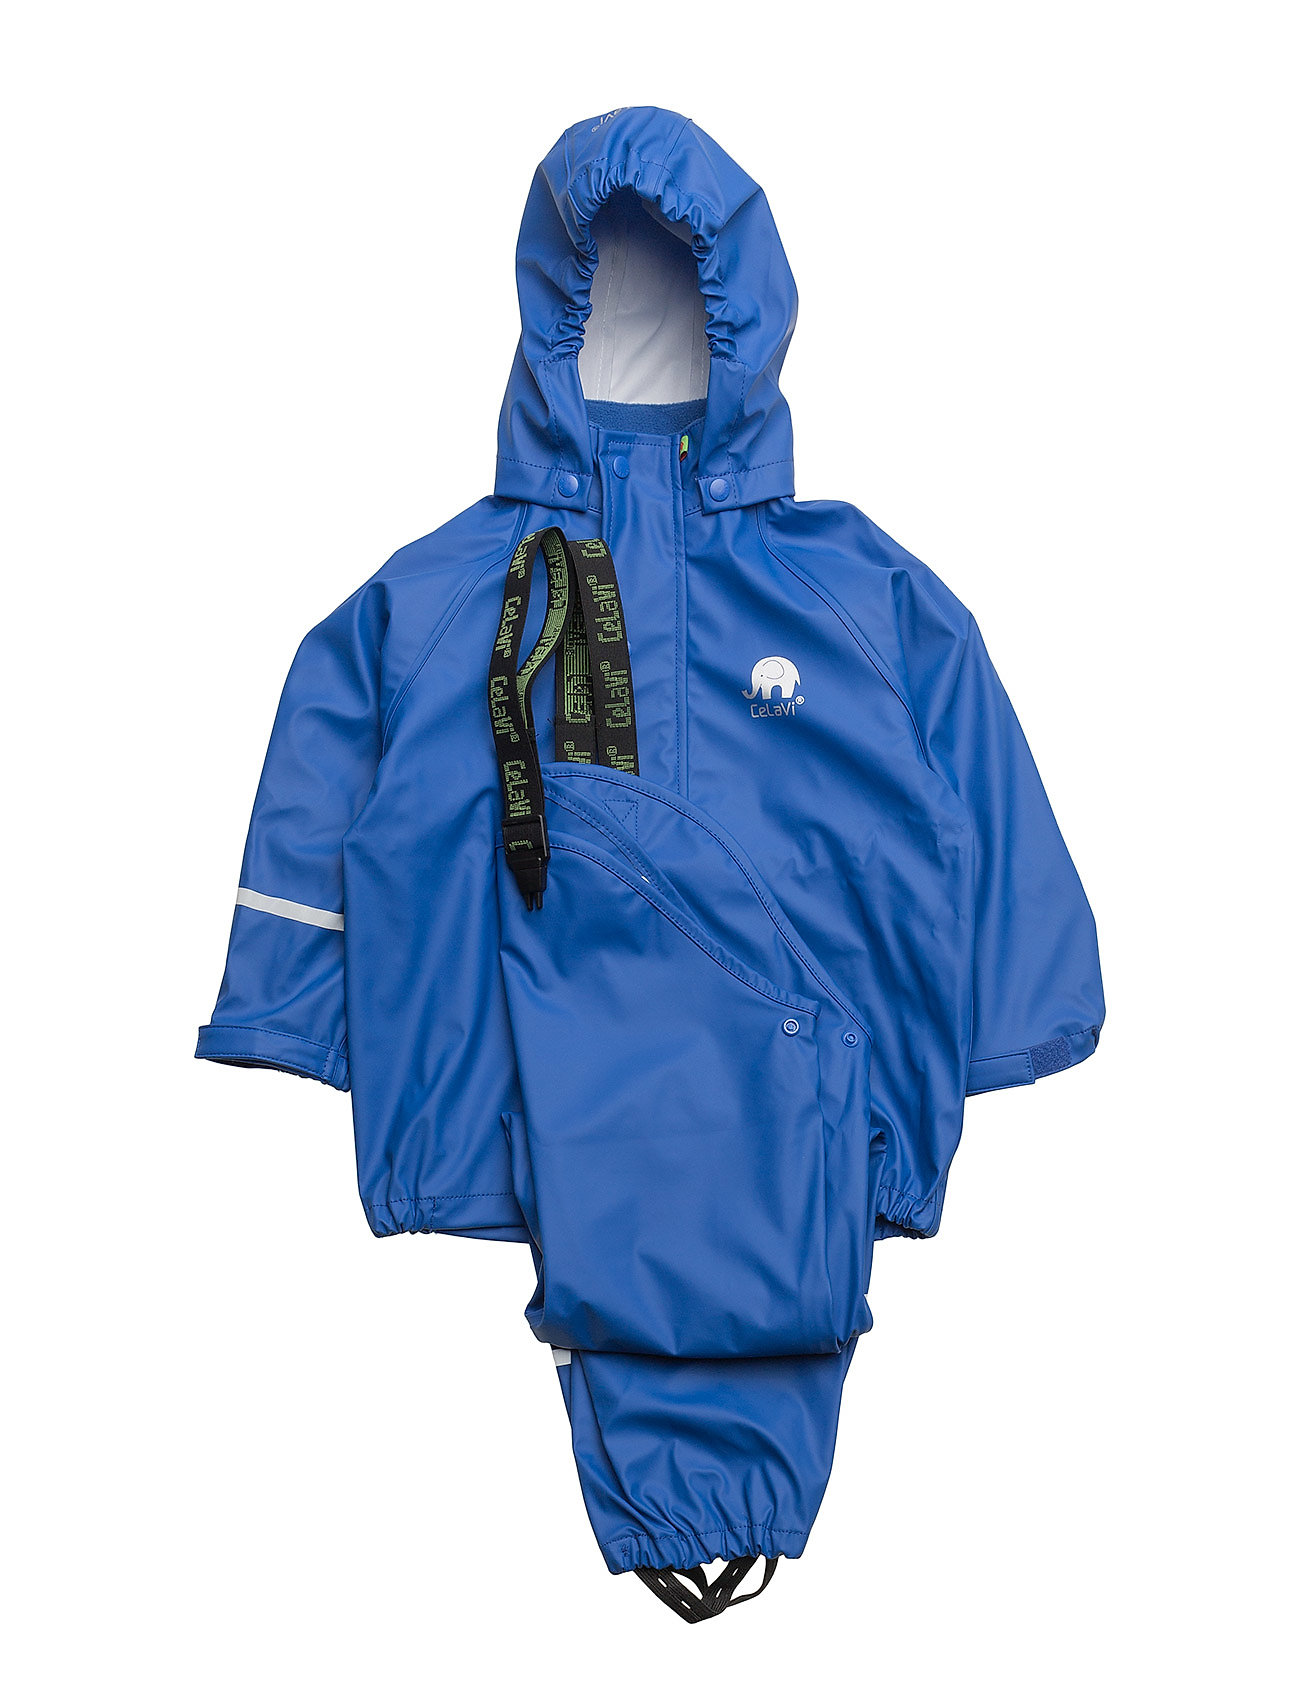 Basci Rainwear Set, Solid Sadevaatteet Sininen CeLaVi